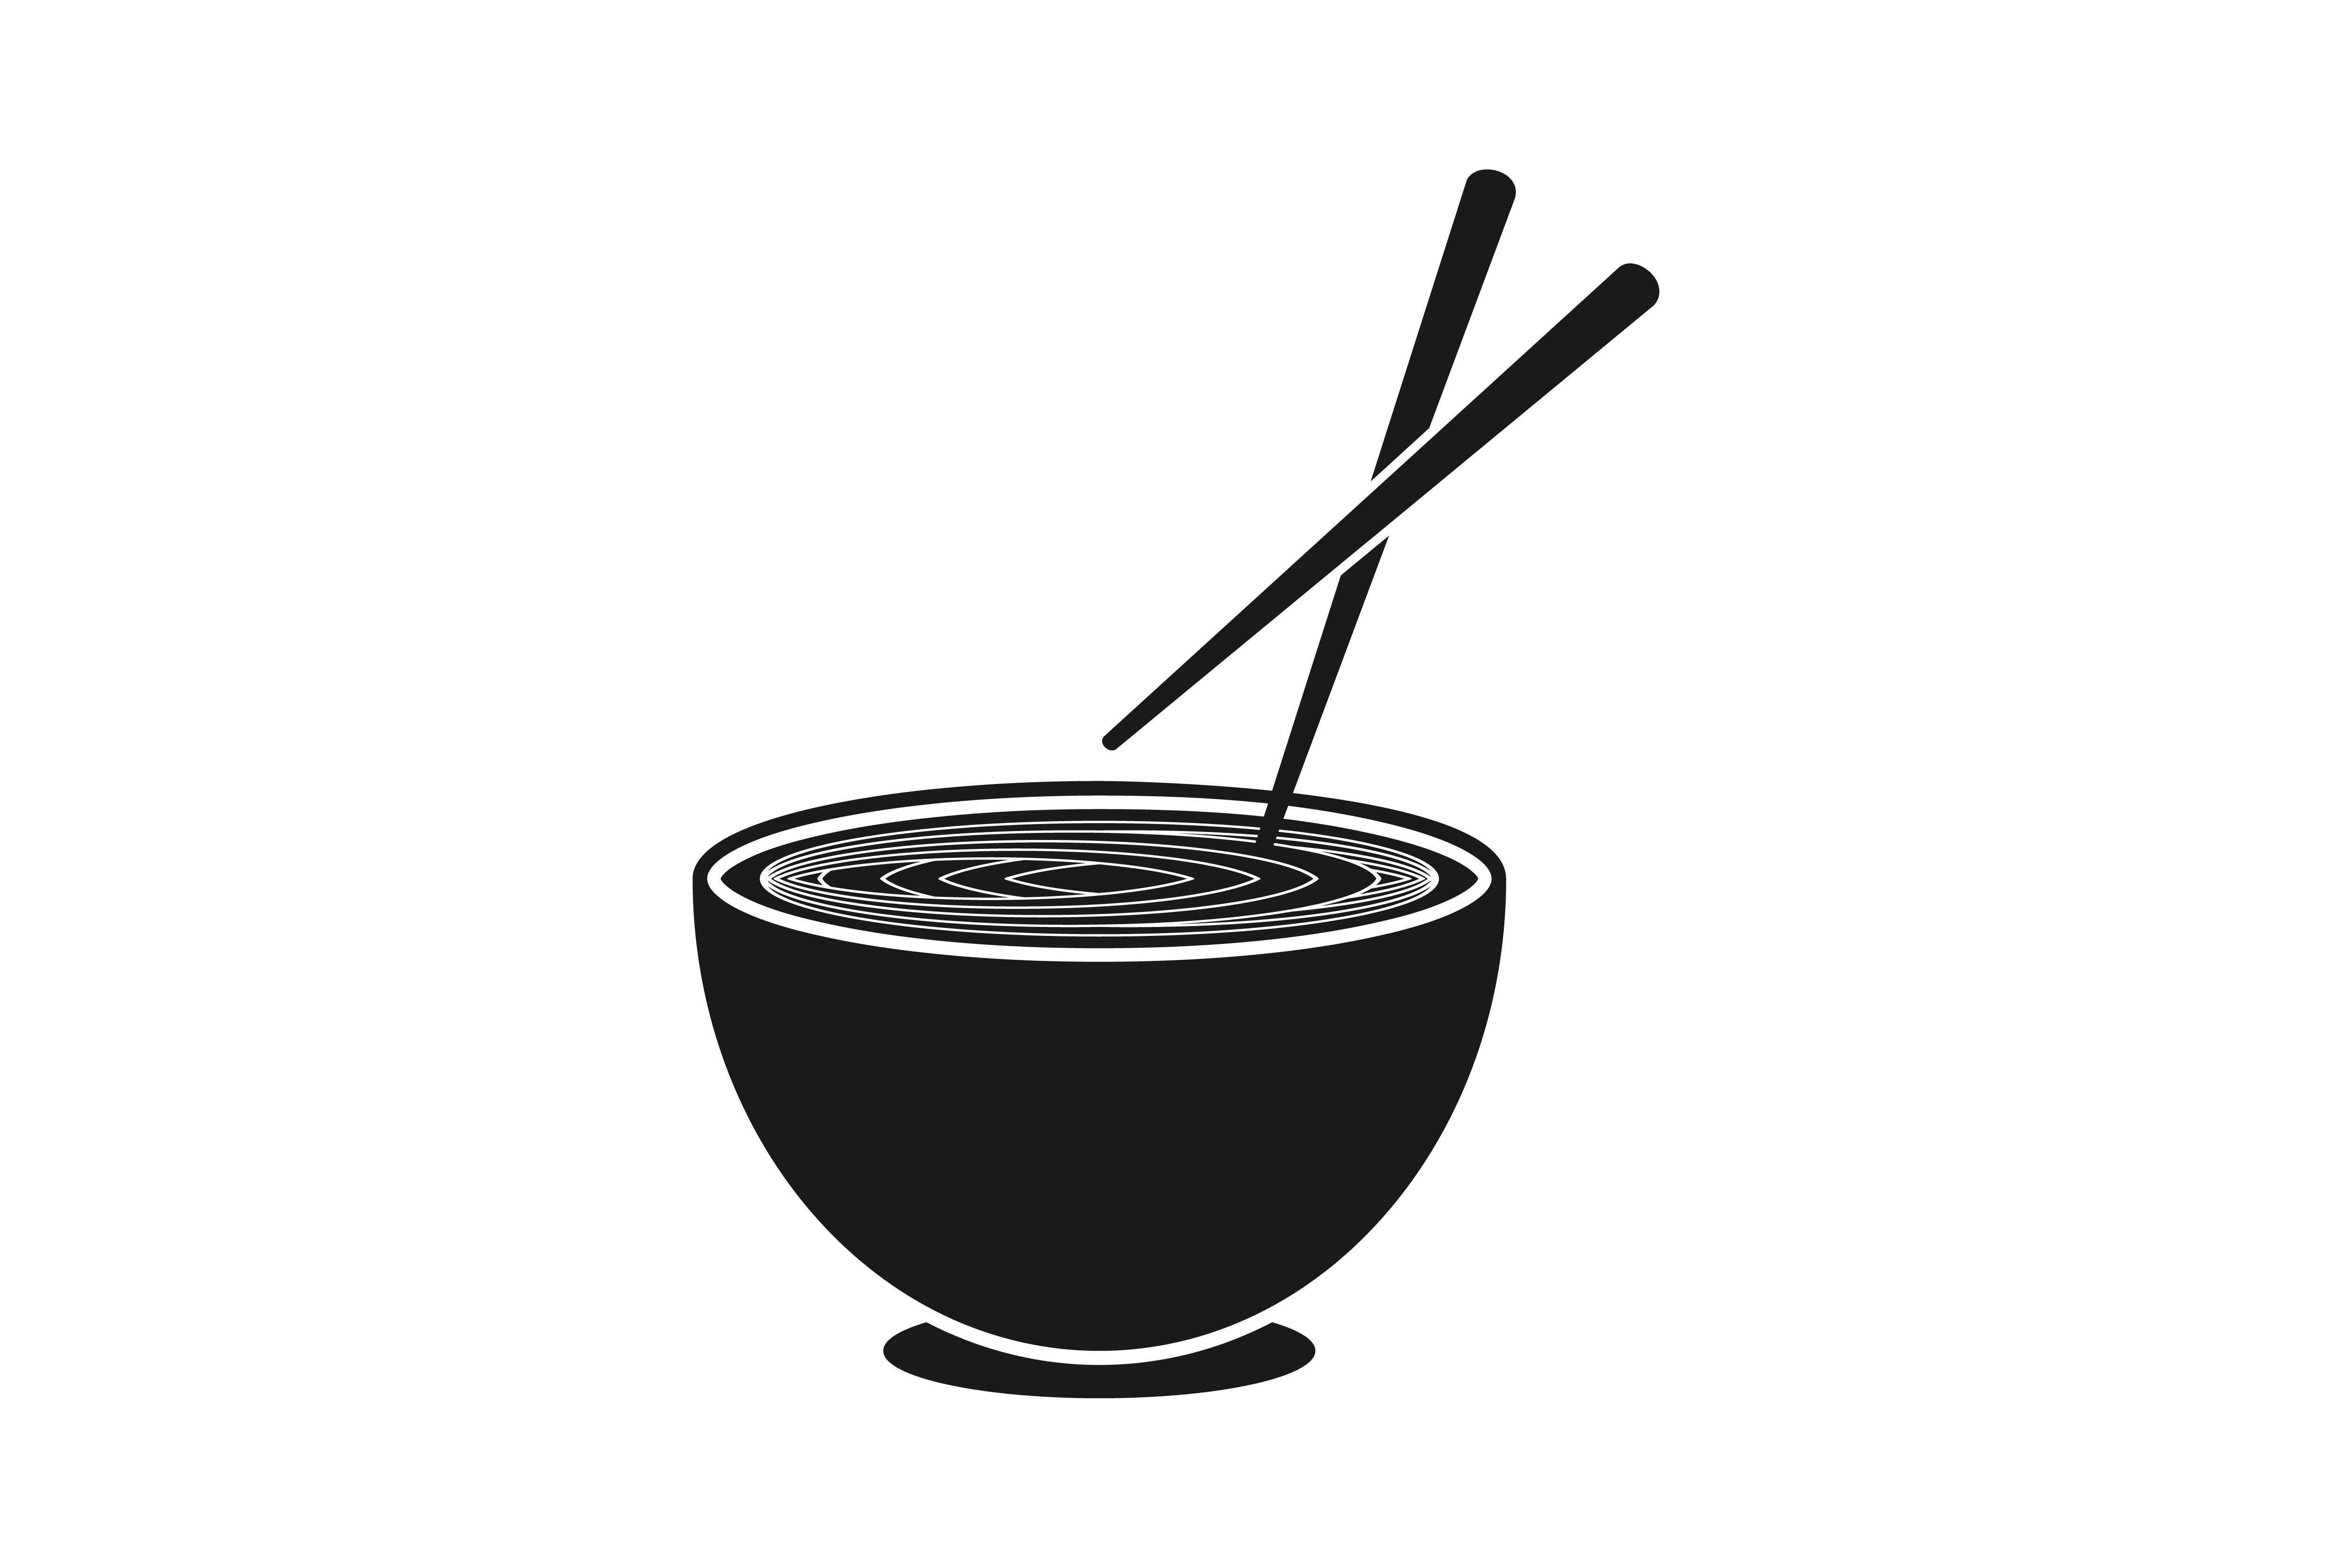 Noodles Logo - Noodles chopsticks Japanese restaurant logo